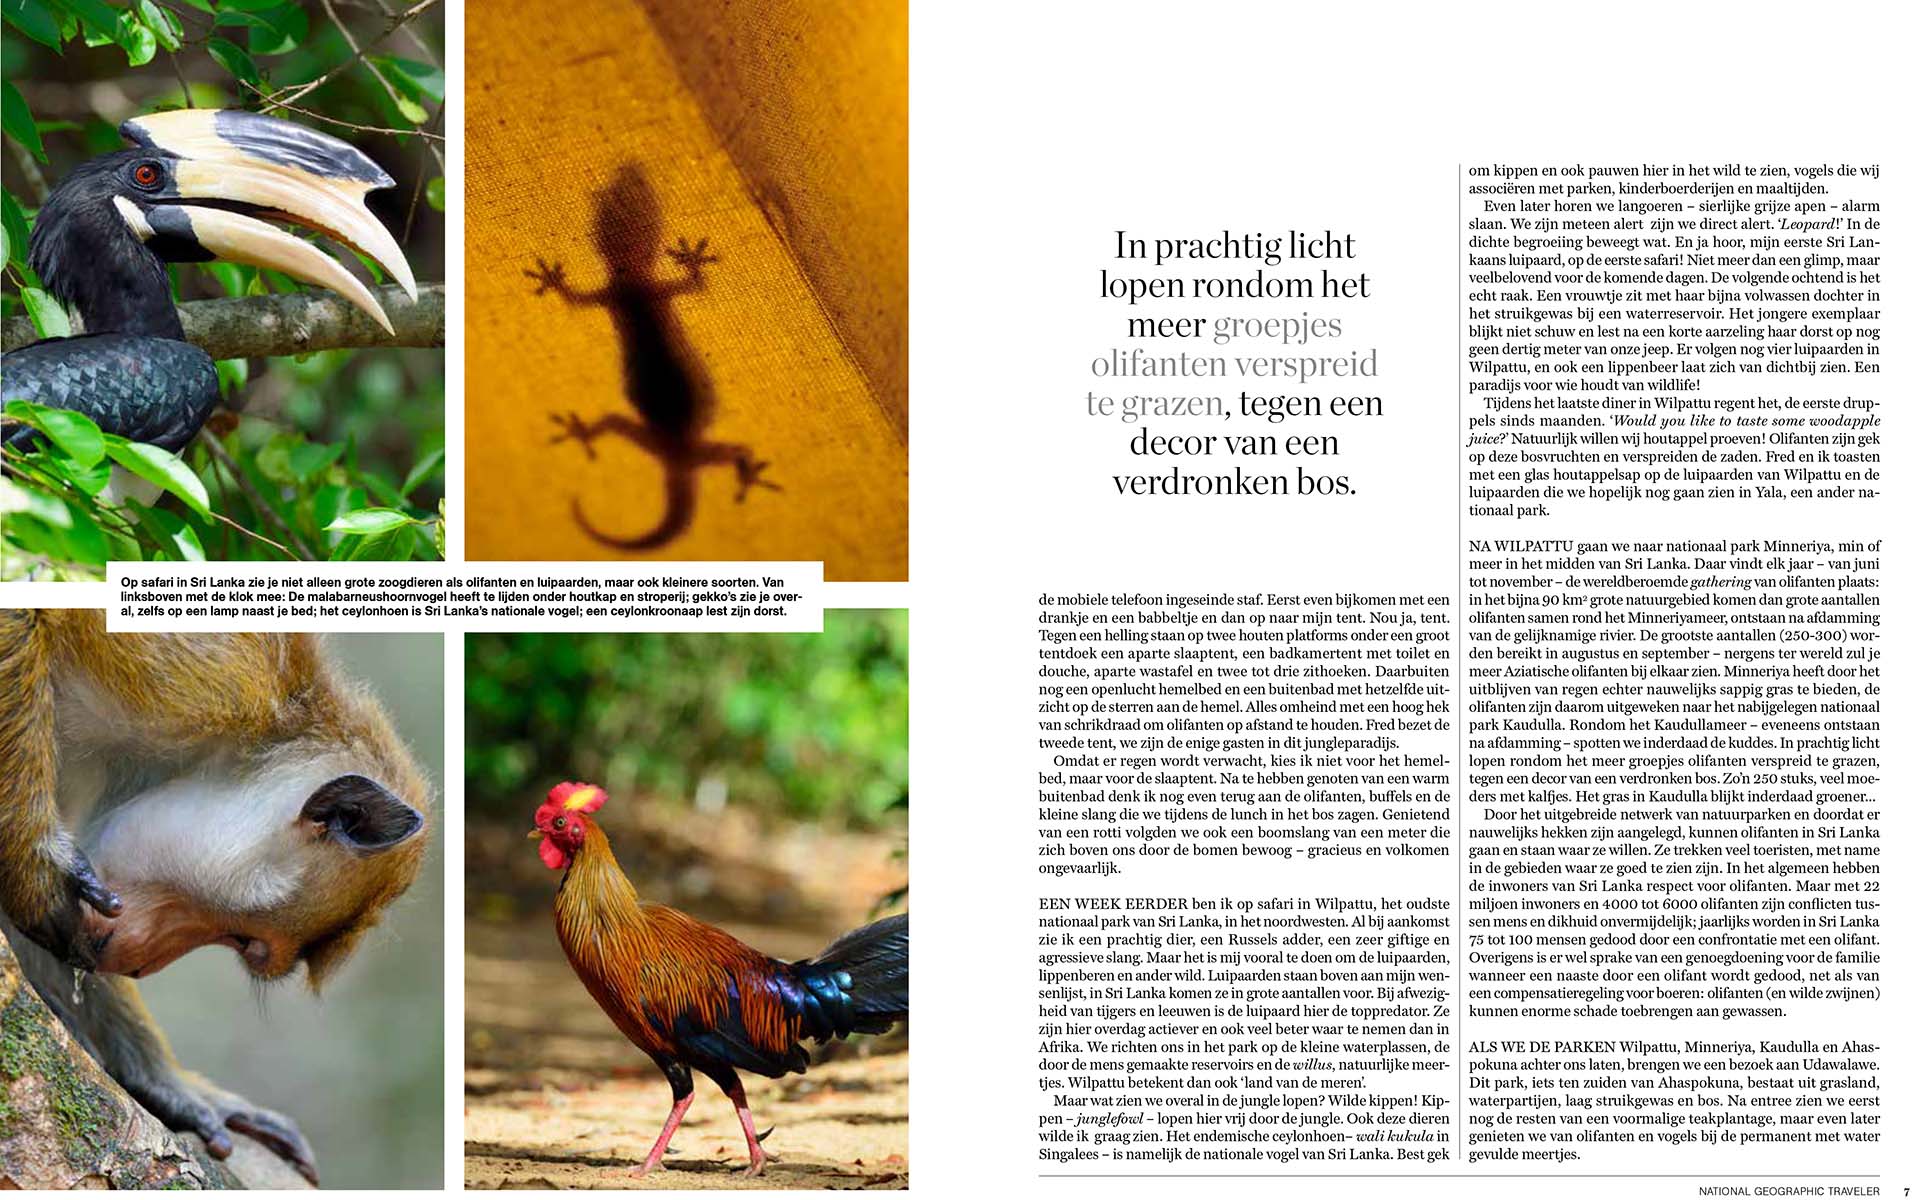 Twee pagina's uit artikel Wild Sri Lanka door Martin van Lokven in National Geographic artikel.